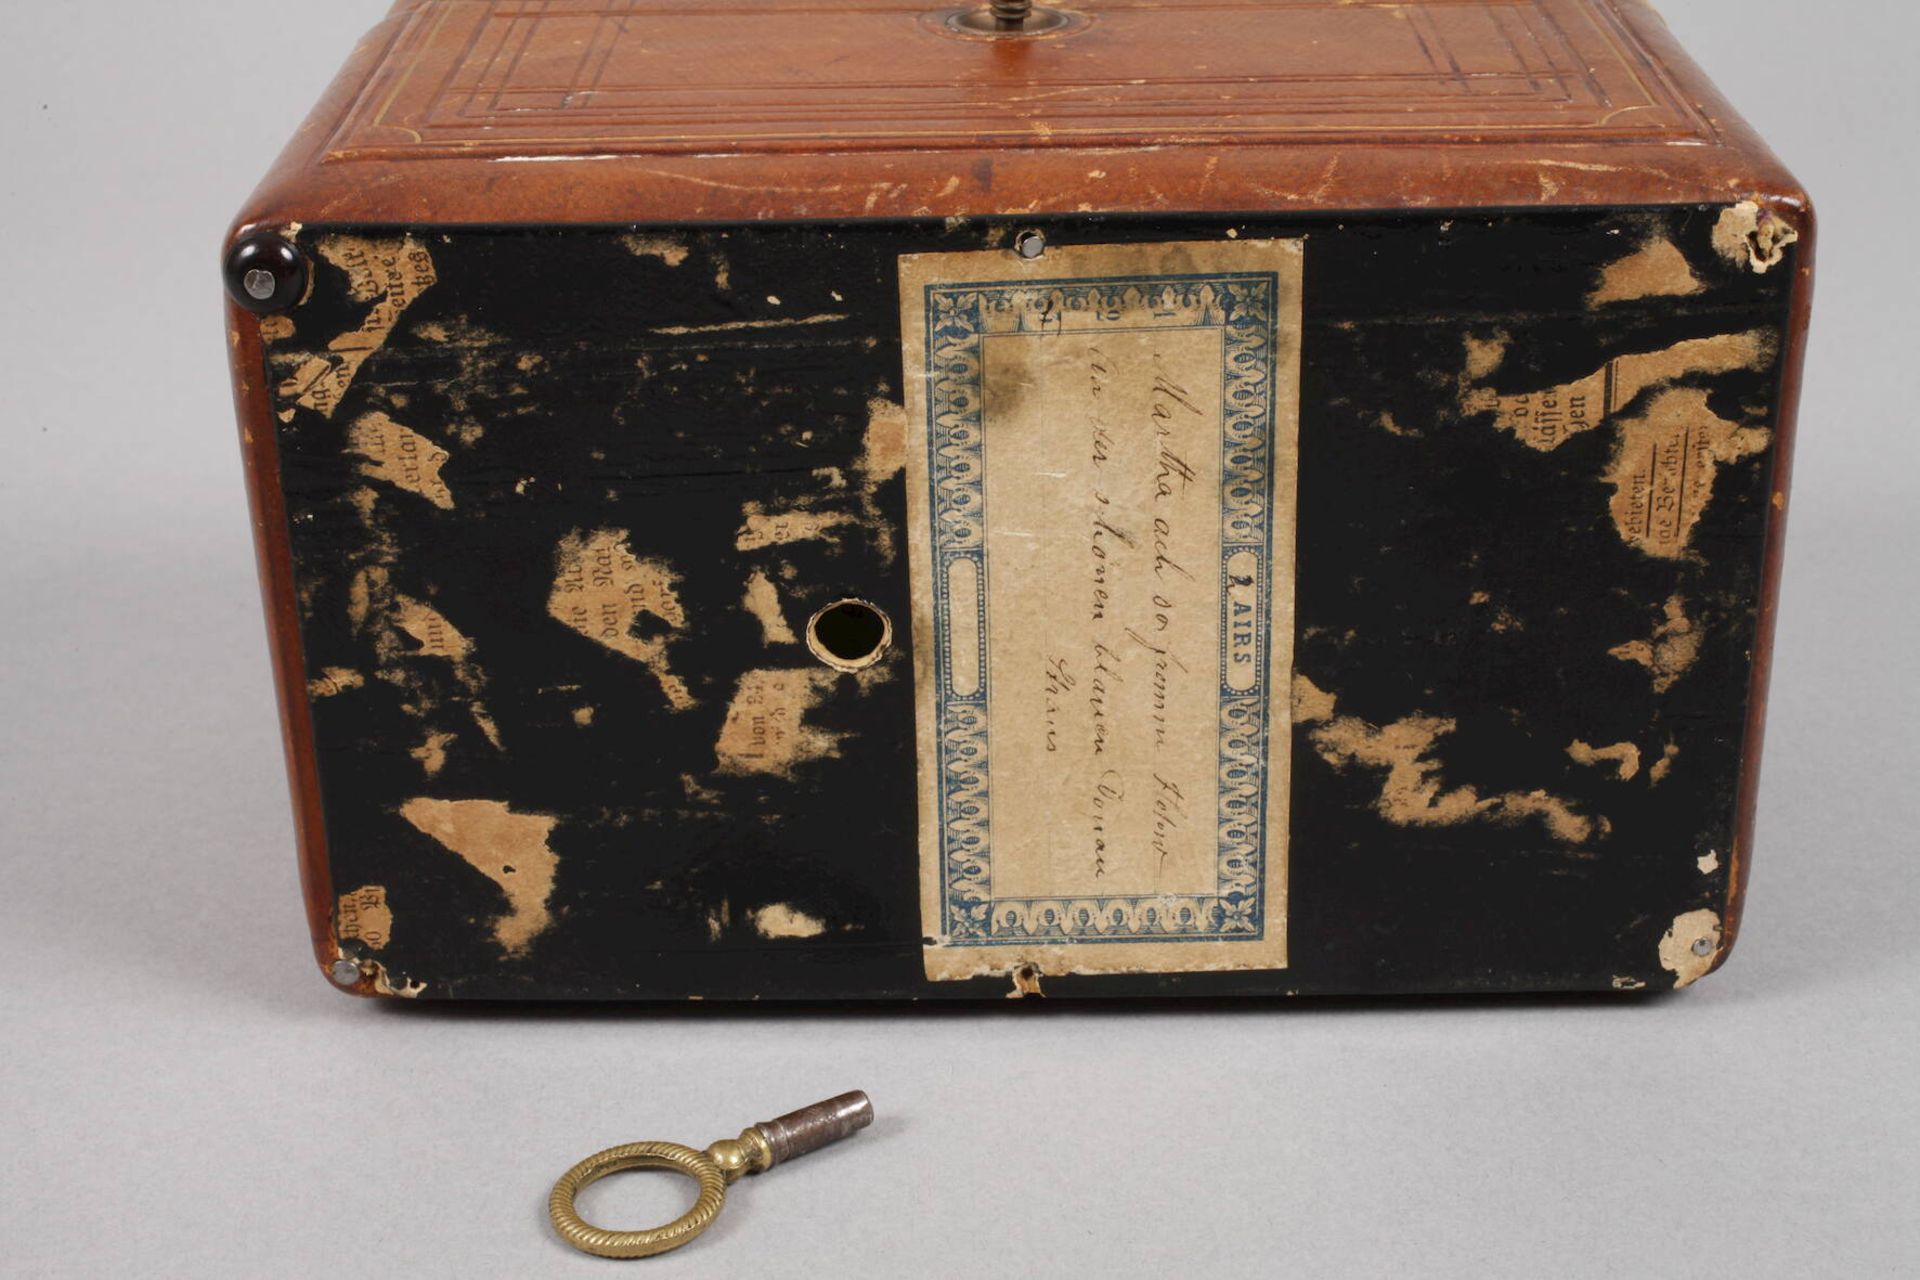 Necessaire mit Spieluhrum 1890, ungemarkt, langrechteckiger, goldgeprägter lederbezogener Korpus, - Image 3 of 6